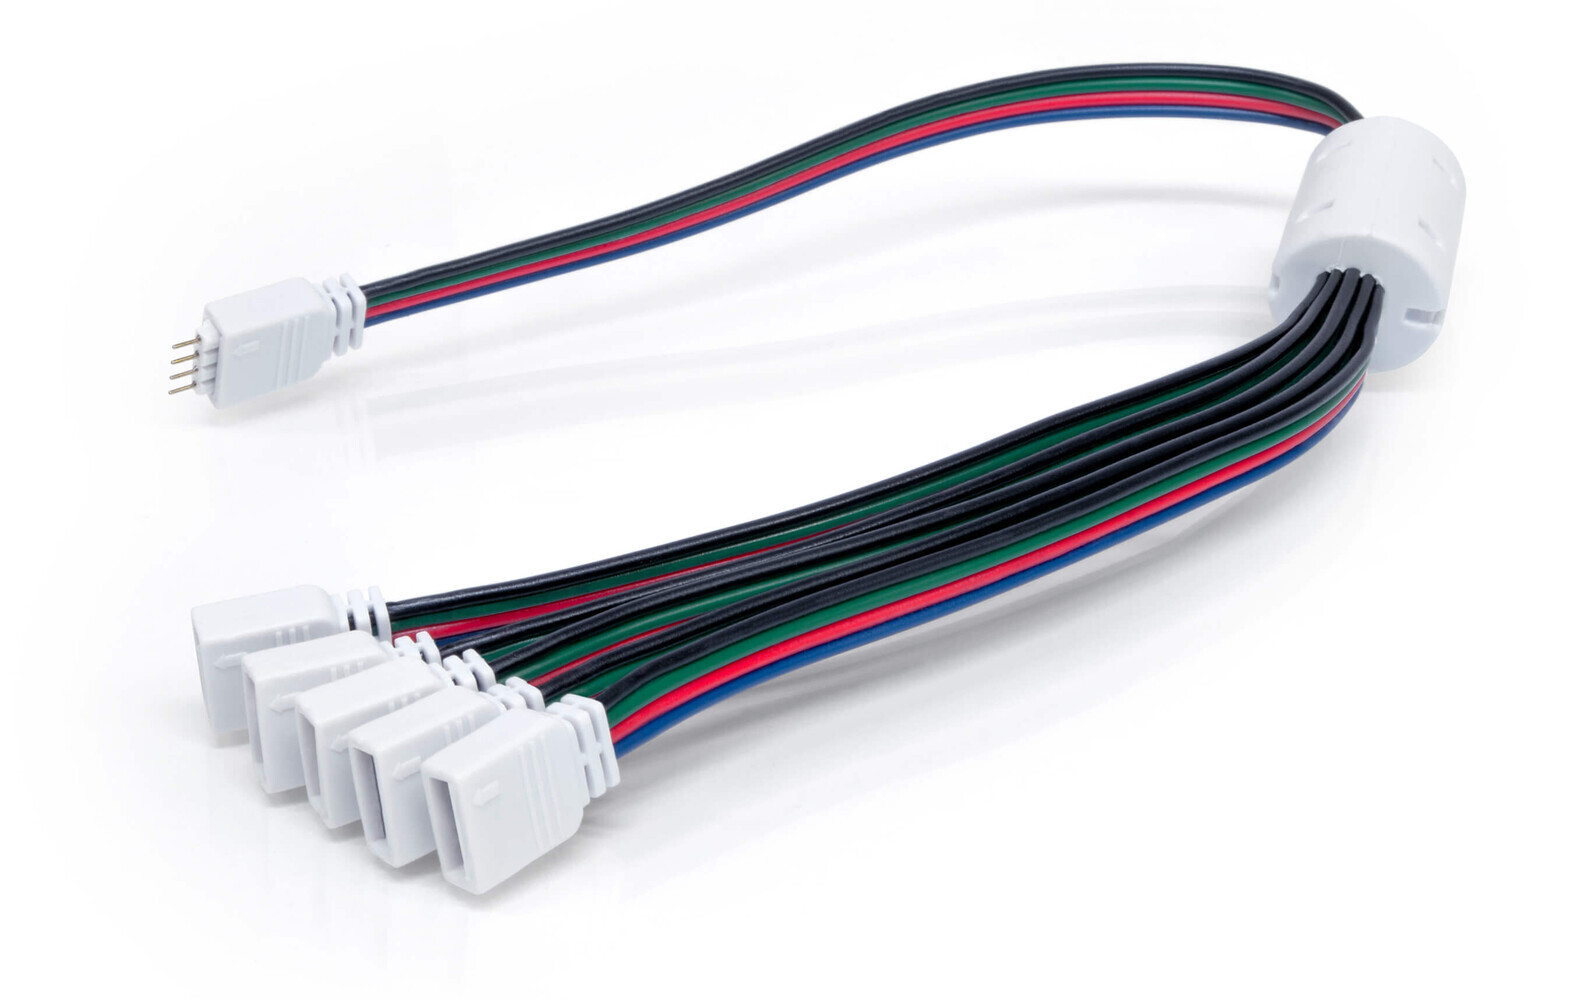 LED Streifen Verteiler von LED Universum - 4 Pol Verteiler 1 zu 4 - RGB LED Streifen Zubehör mit Stecker und Buchse